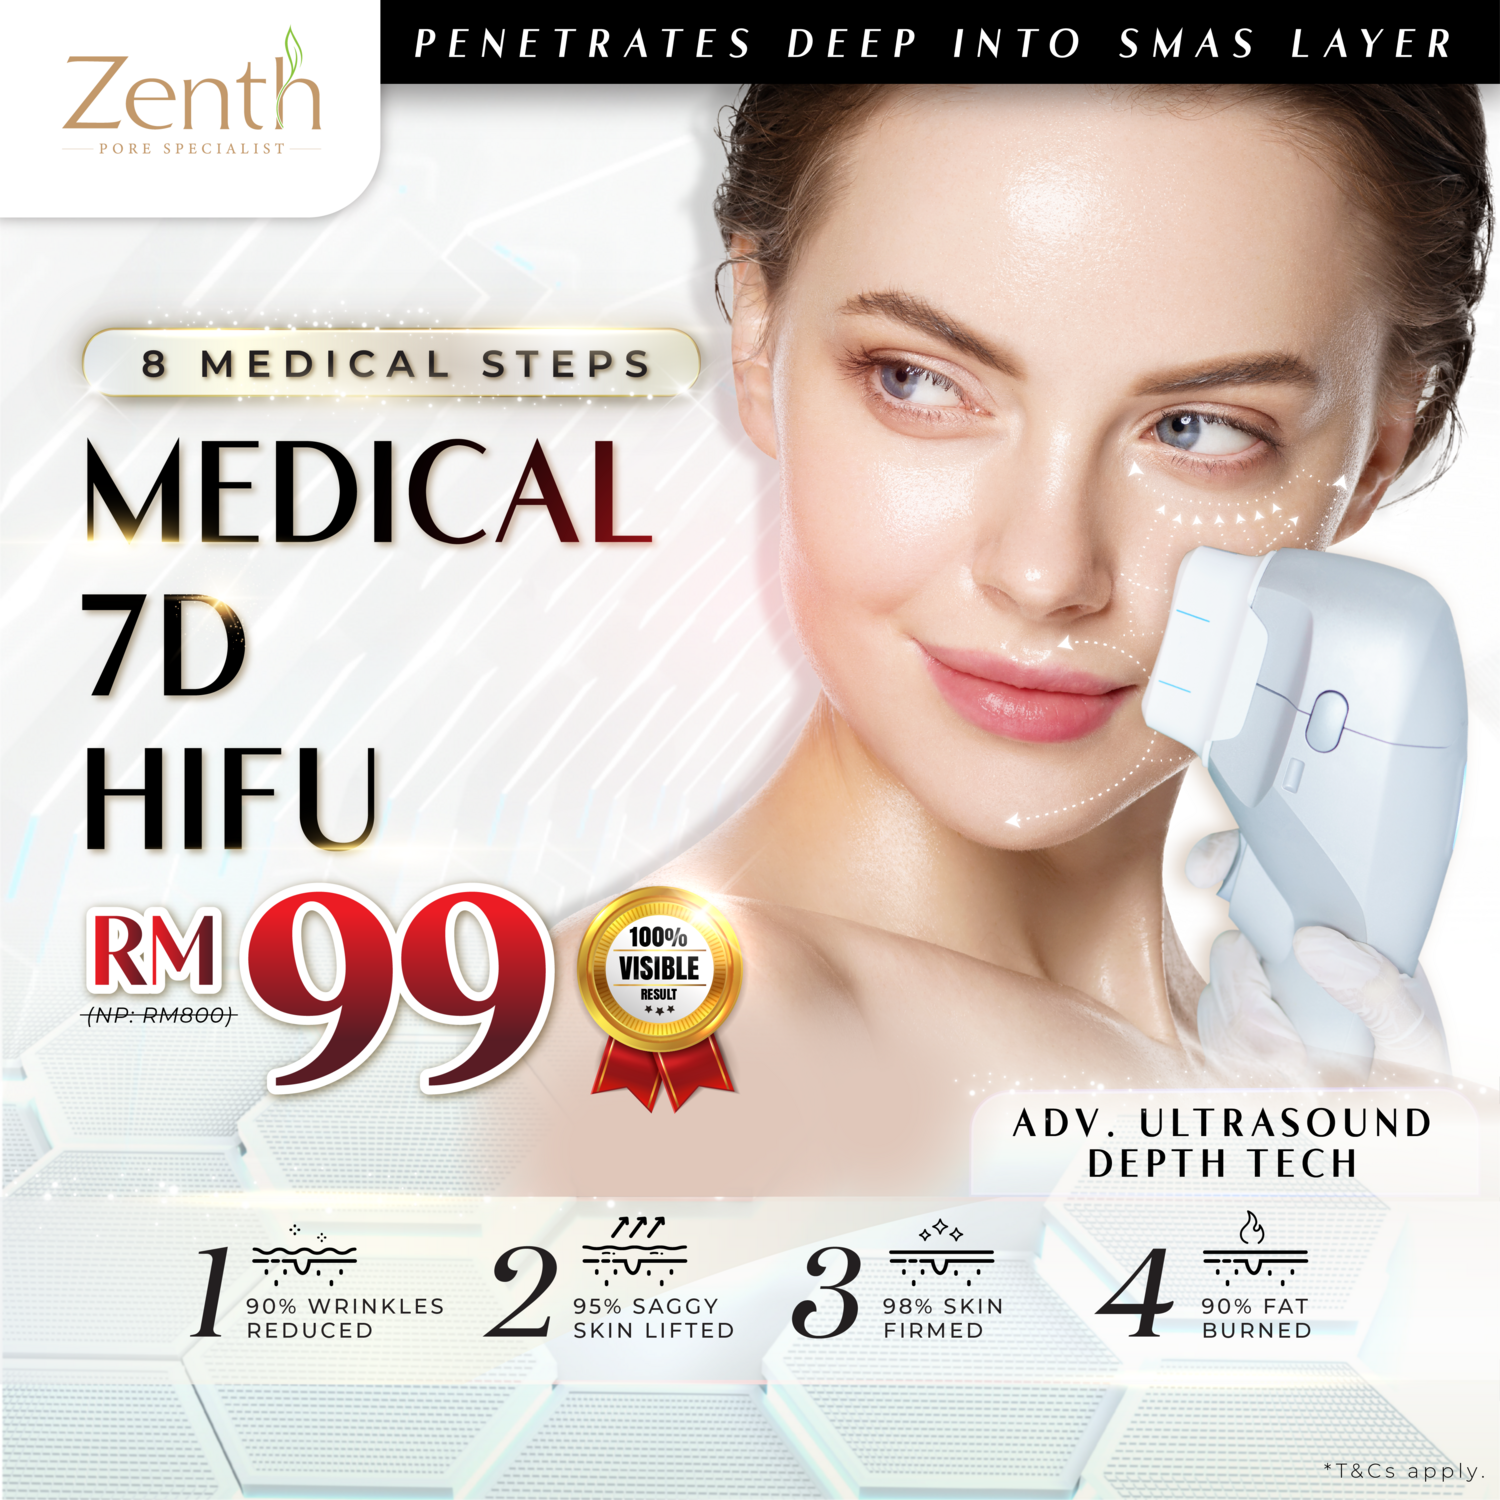 7D-HIFU (Skin Tightening Treatment)